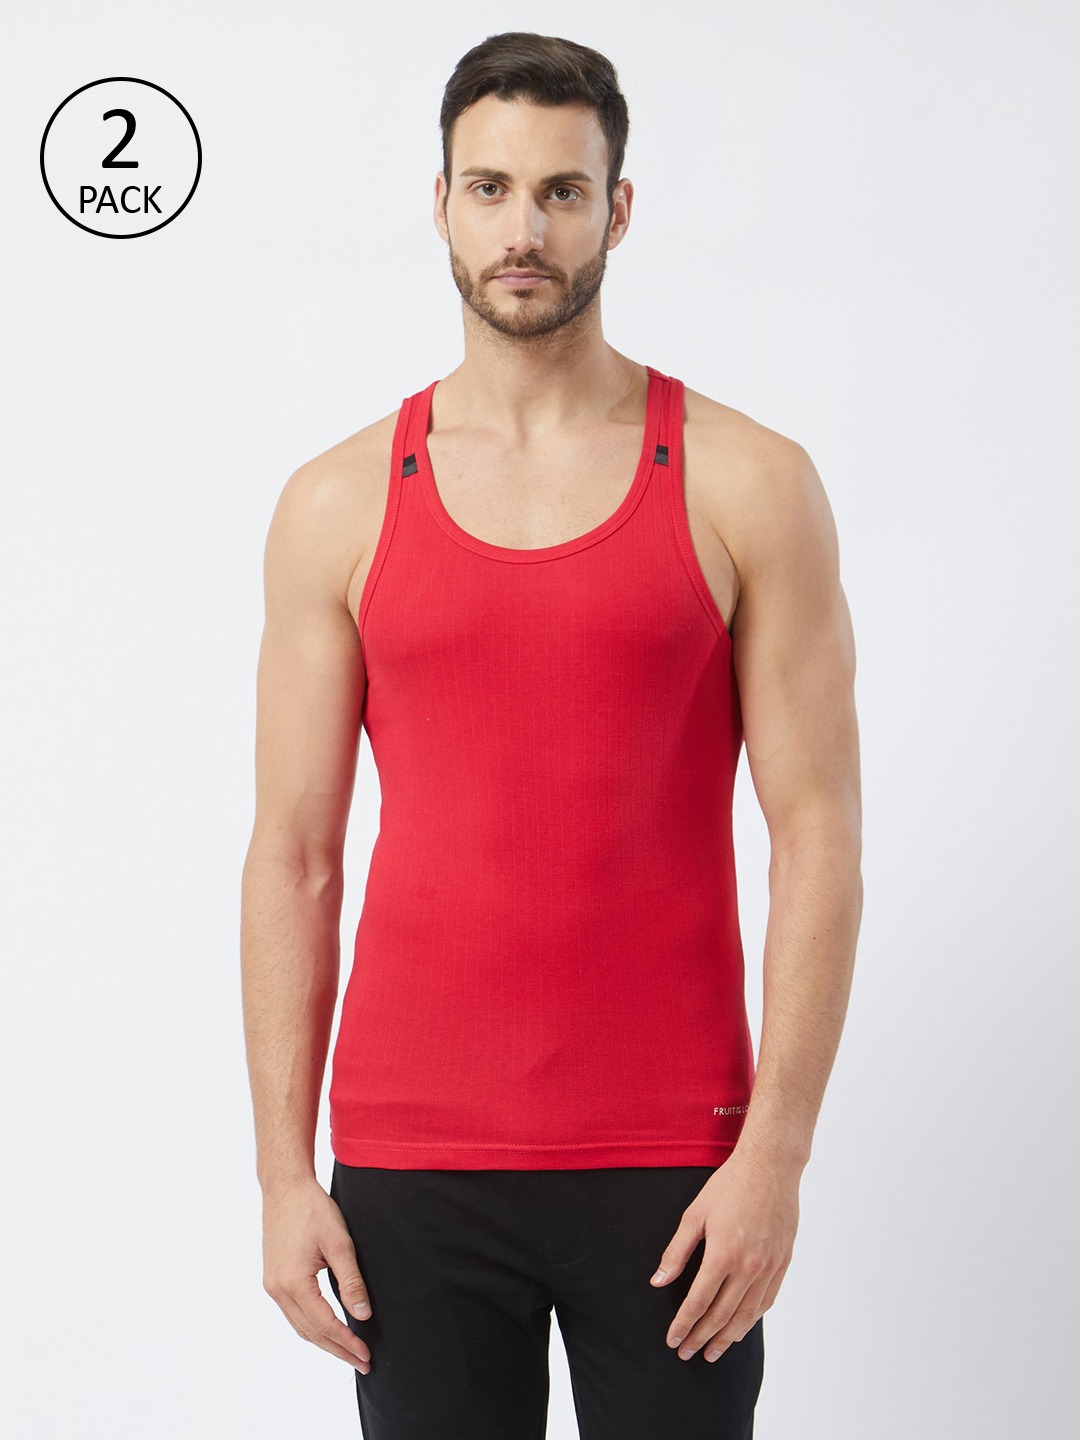 Clothing Innerwear Vests | Fruit of the loom Men Red Solid Innerwear Vest MFV03-N-A1S4 - LJ83872